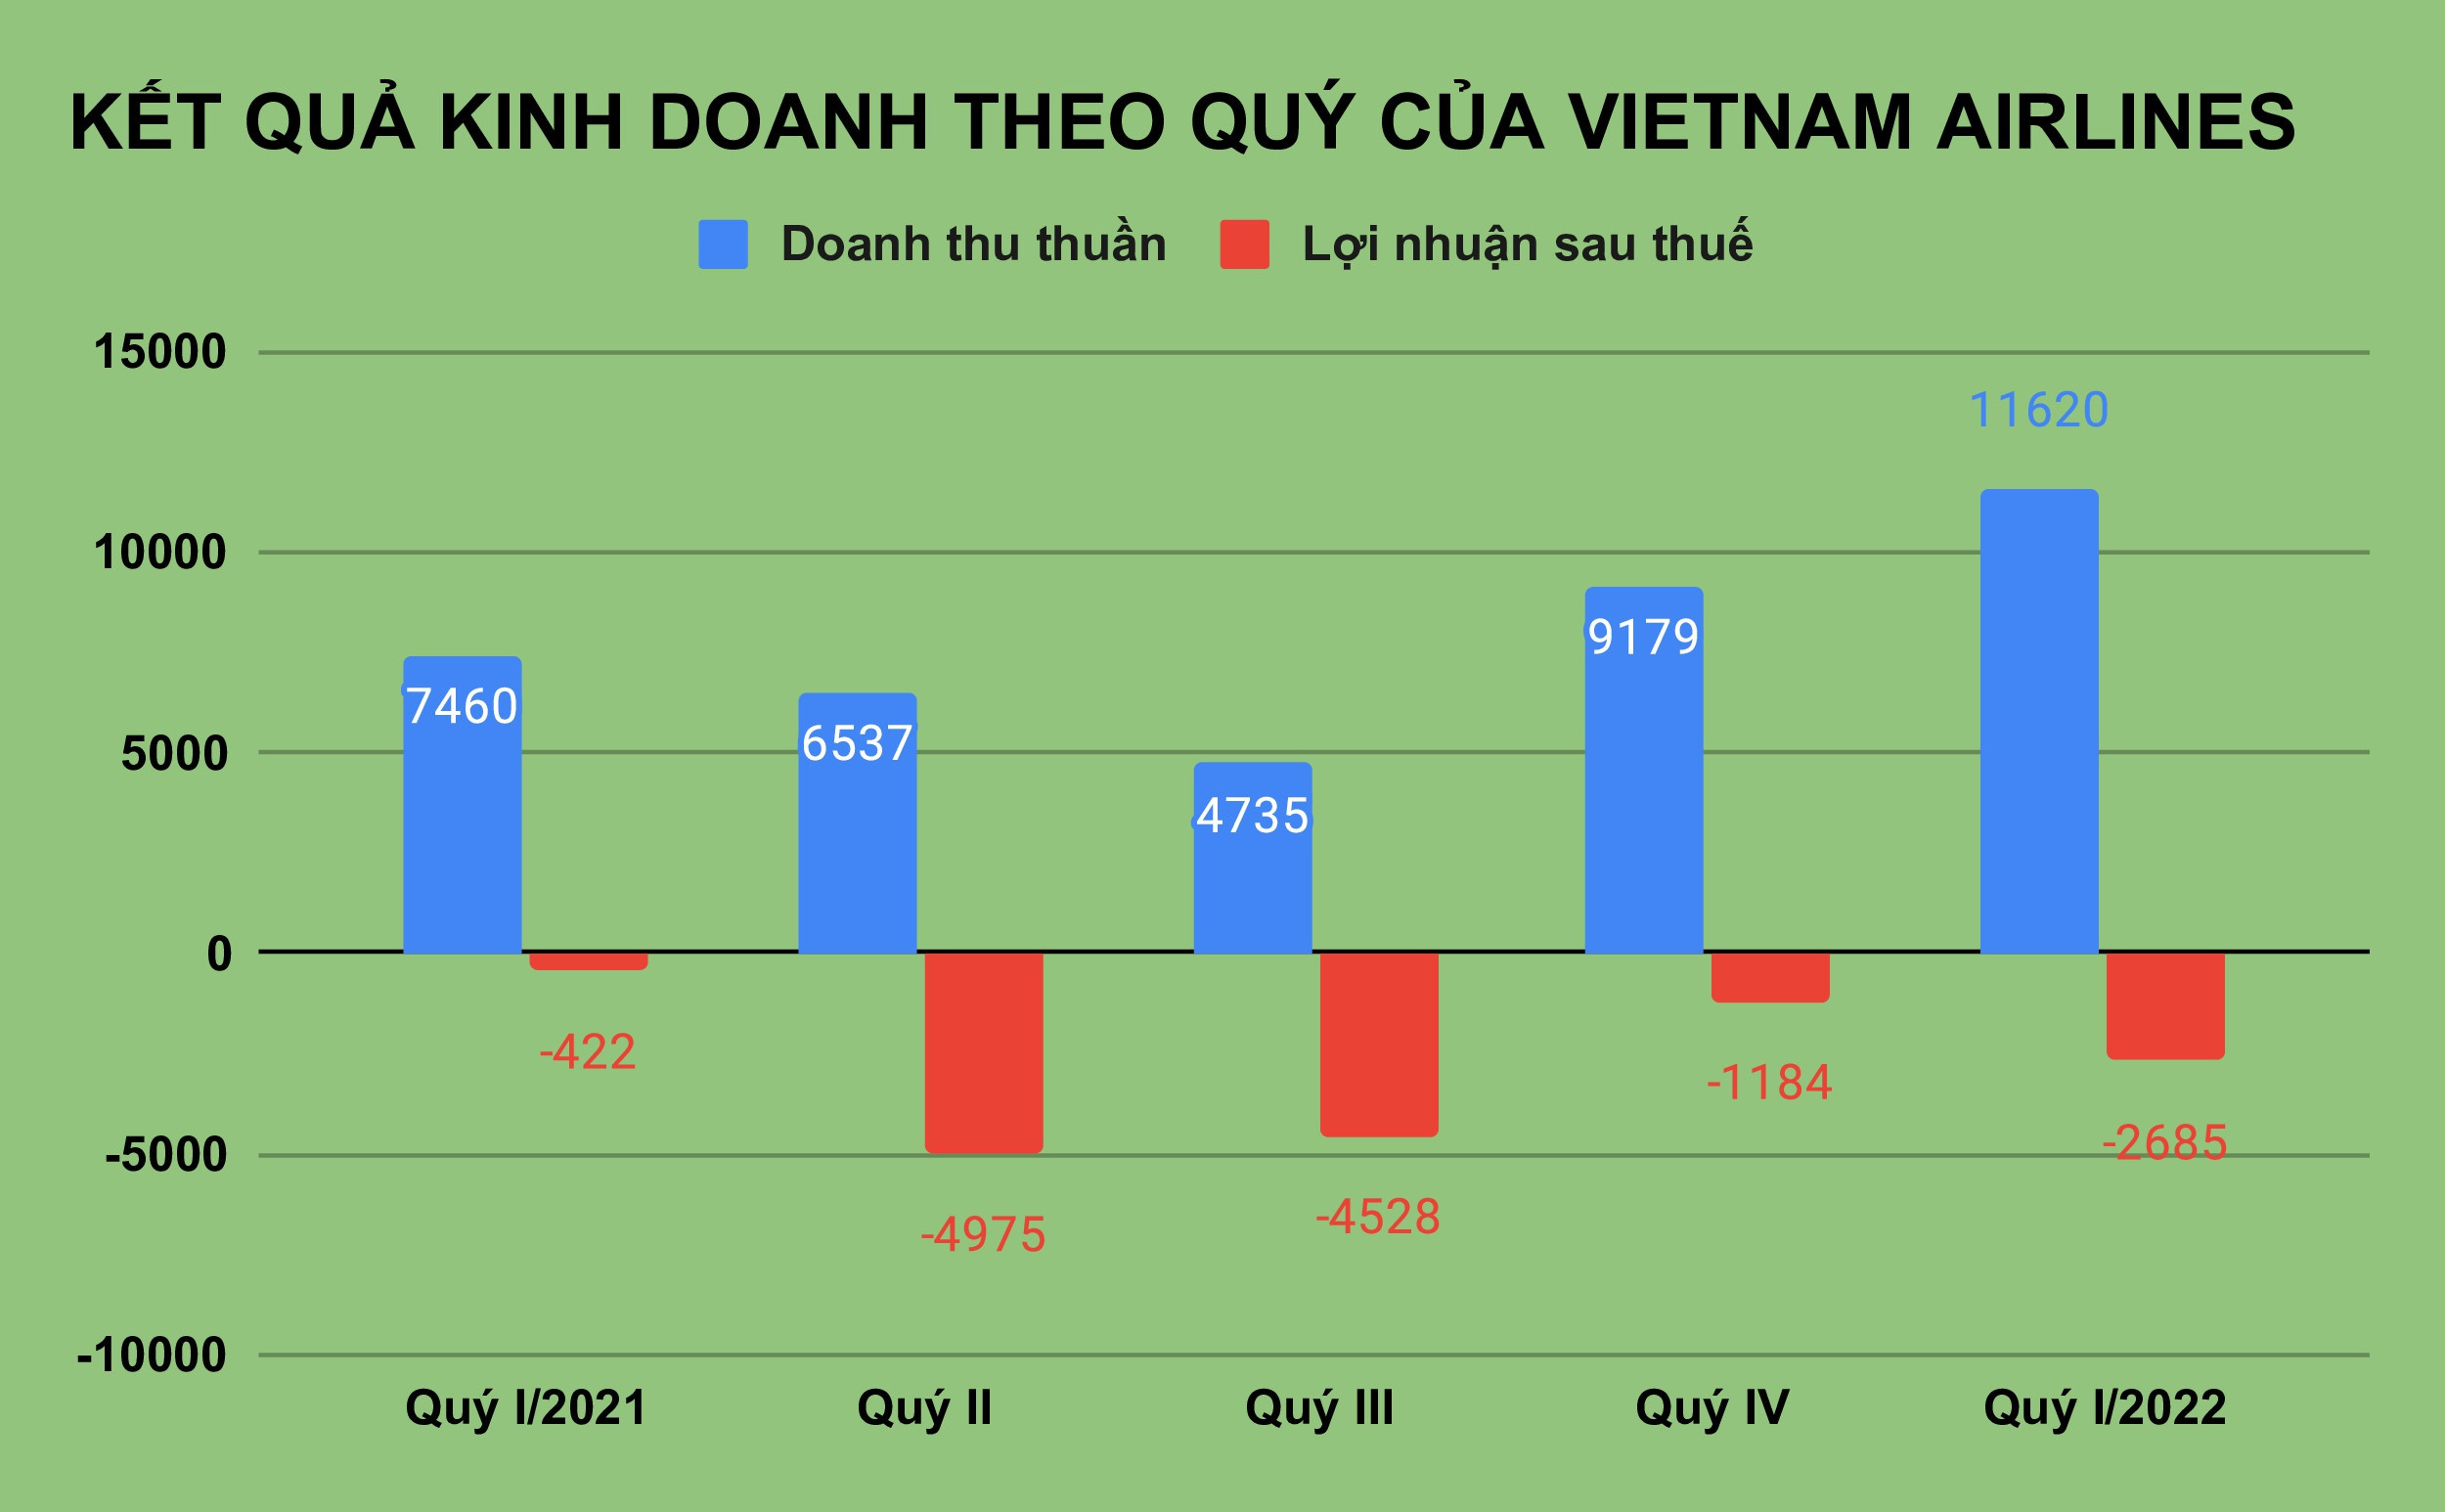 Lương Chủ tịch Vietnam Airlines bao nhiêu khi hãng lỗ lũy kế 1 tỷ USD?